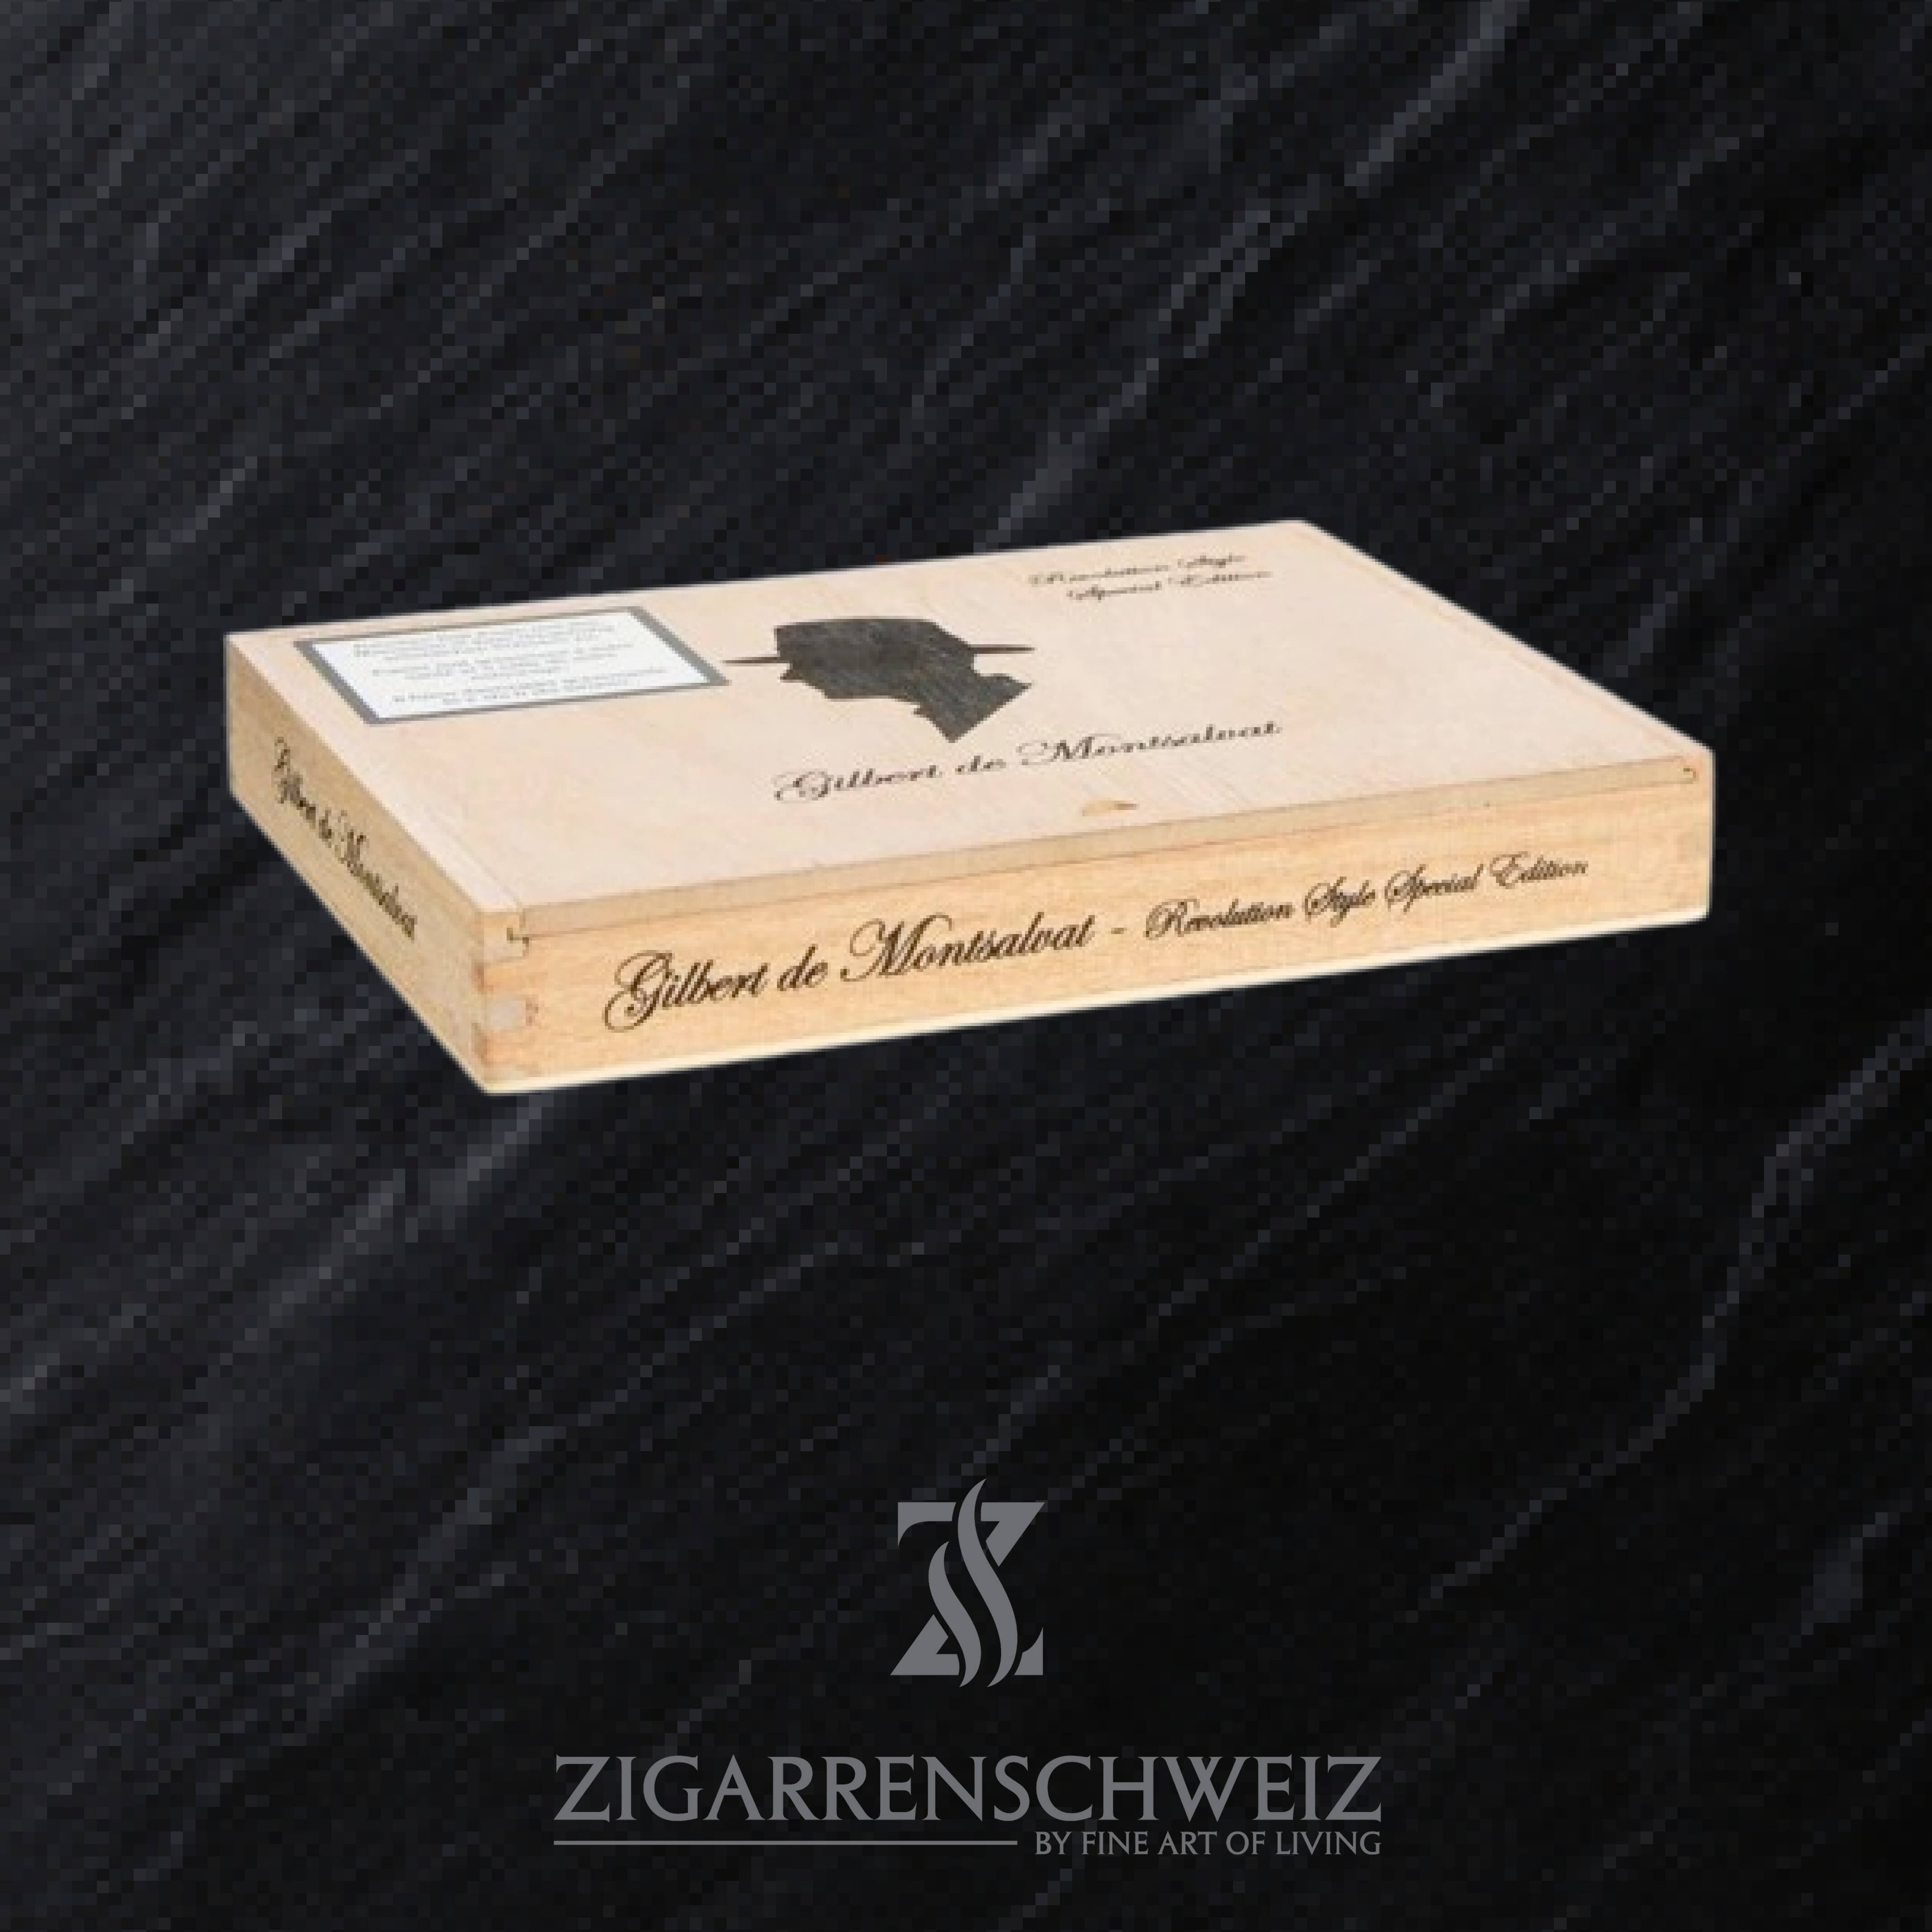 Gilbert de Montsalvat Revolution Style Special Edition Zigarren Kiste geschlossen